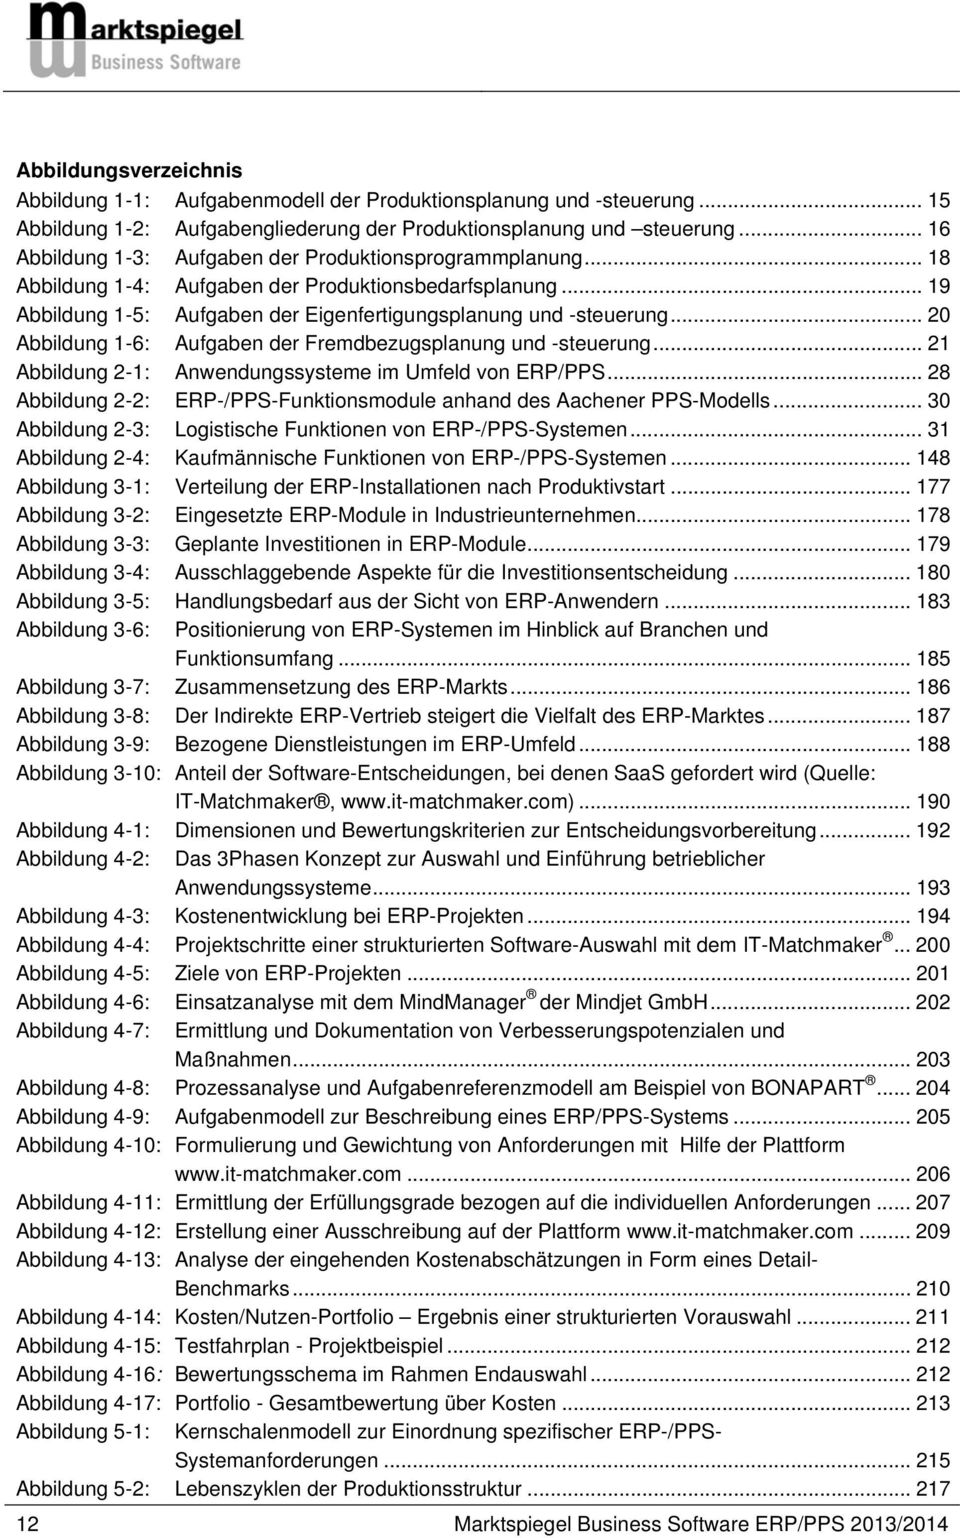 .. 20 Abbildung 1-6: Aufgaben der Fremdbezugsplanung und -steuerung... 21 Abbildung 2-1: Anwendungssysteme im Umfeld von ERP/PPS.